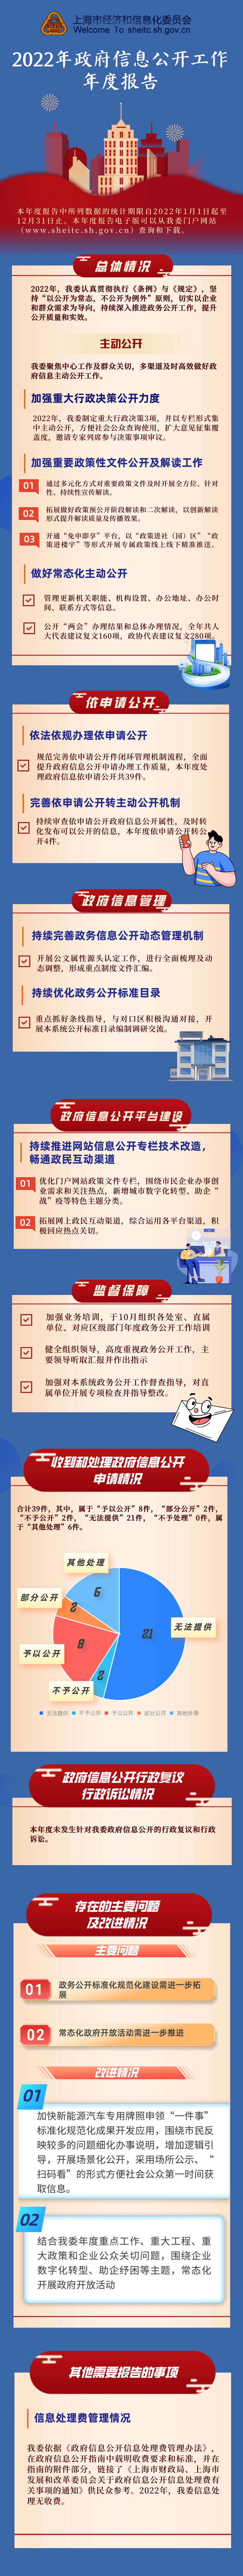 2022年上海市经济和信息化委员会政府信息公开工作年度报告图文解读.jpg